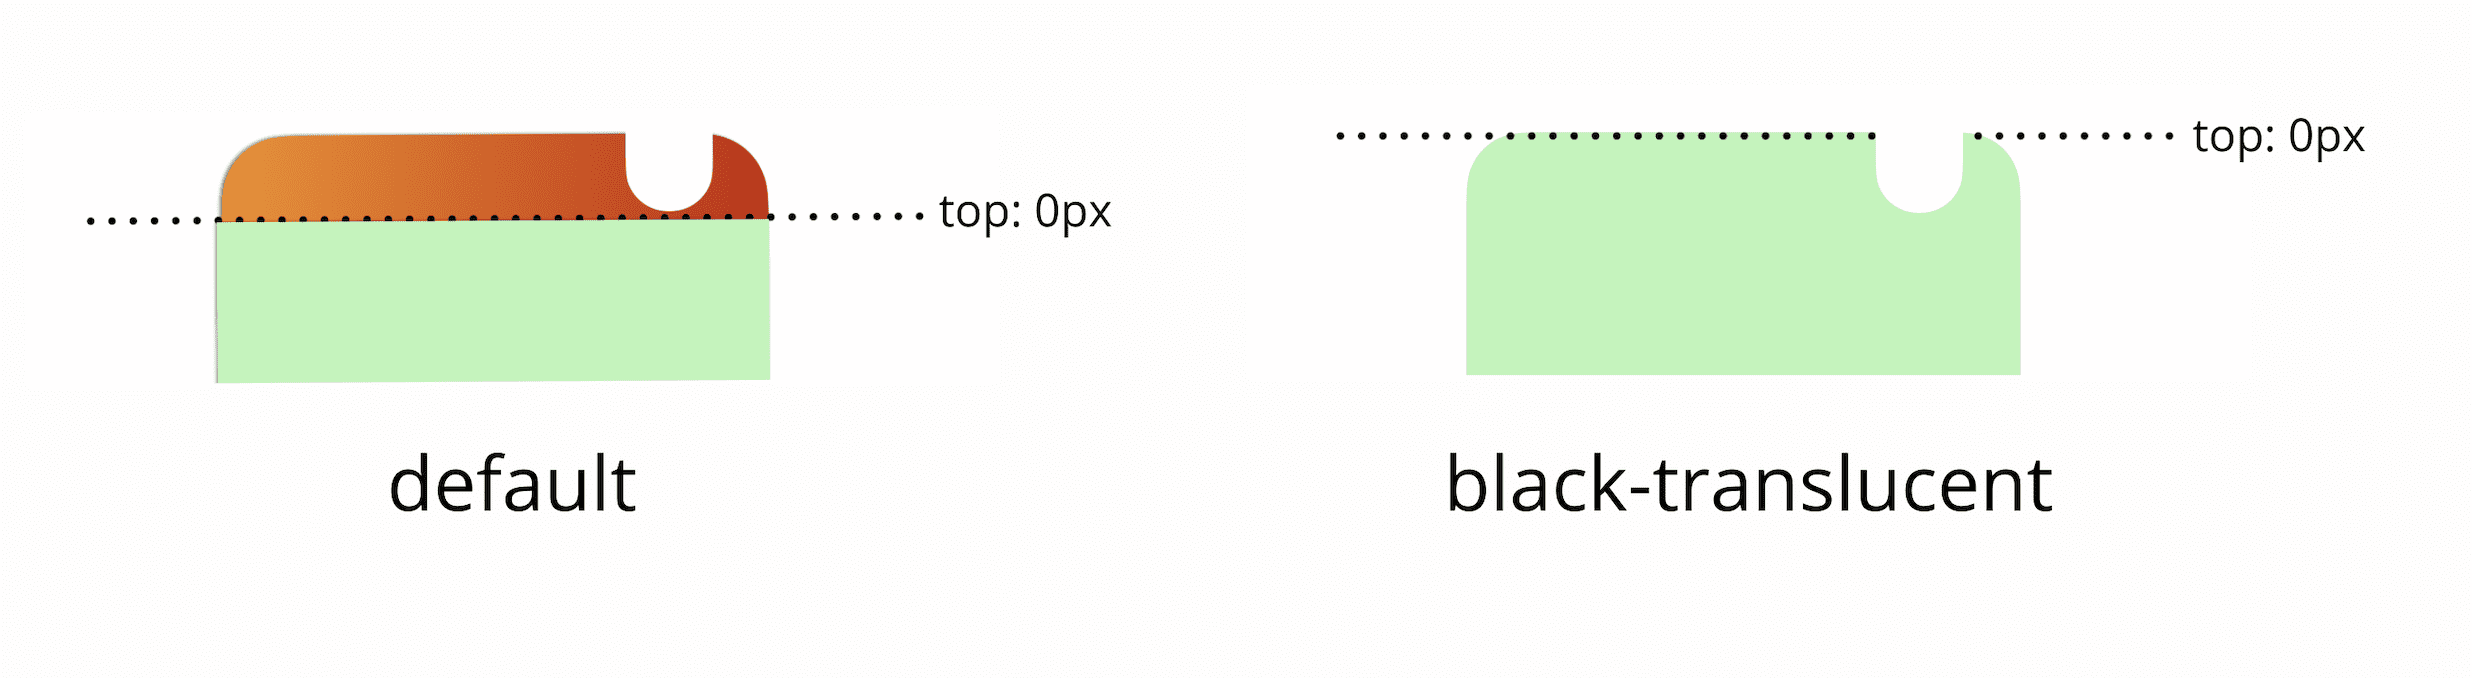 Par défaut, le 0 px supérieur de la fenêtre d&#39;affichage se trouve sous la barre d&#39;état. Si vous ajoutez une balise Meta noire translucide, le 0 px supérieur de la fenêtre d&#39;affichage correspond à la partie supérieure physique de l&#39;écran.